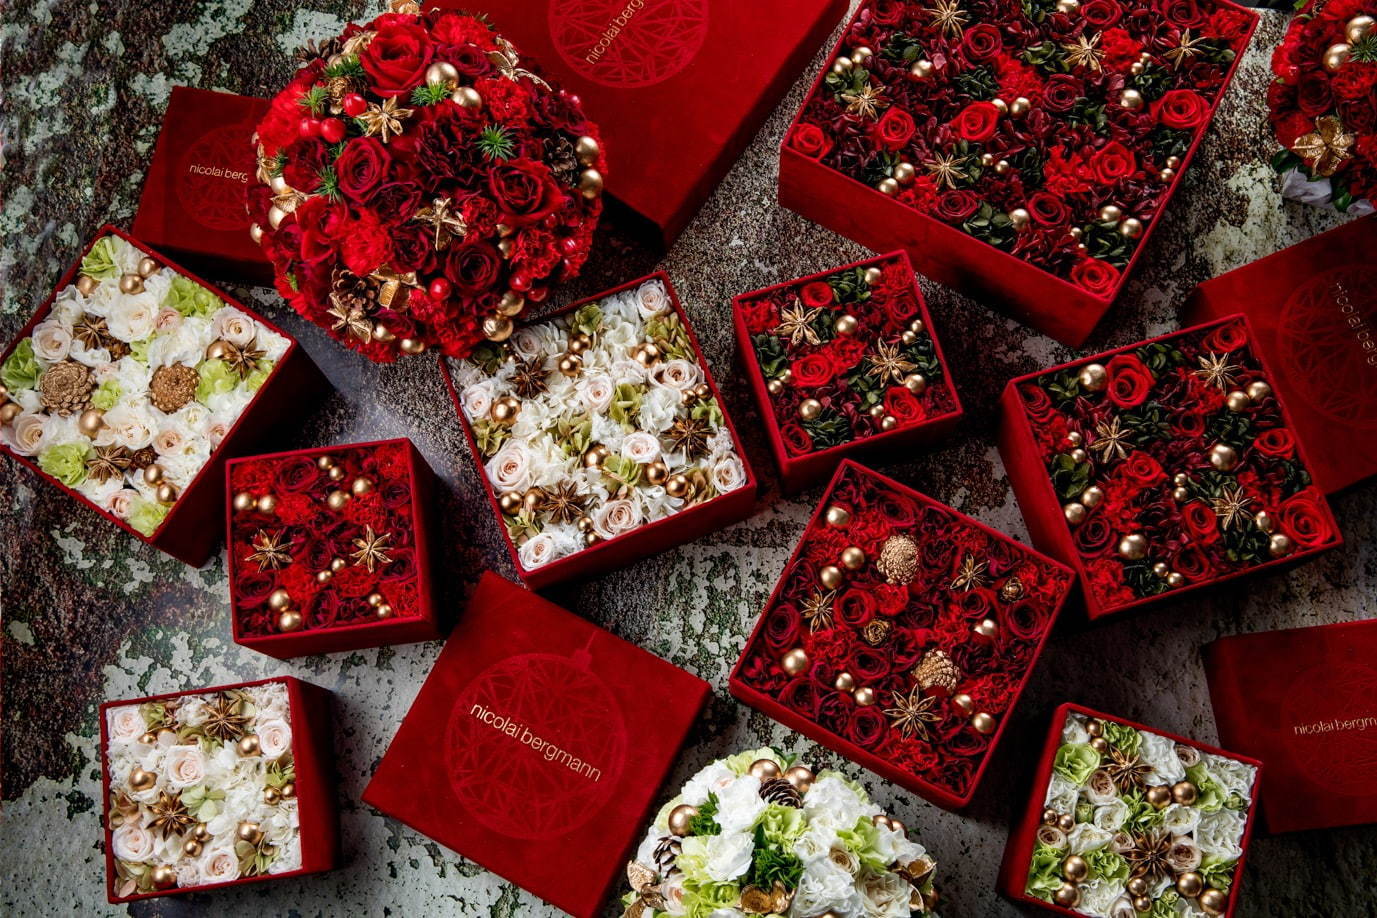 ニコライ バーグマンのクリスマス限定フラワーボックス 真紅のベルベットに赤白の花々を詰め込んで ファッションプレス